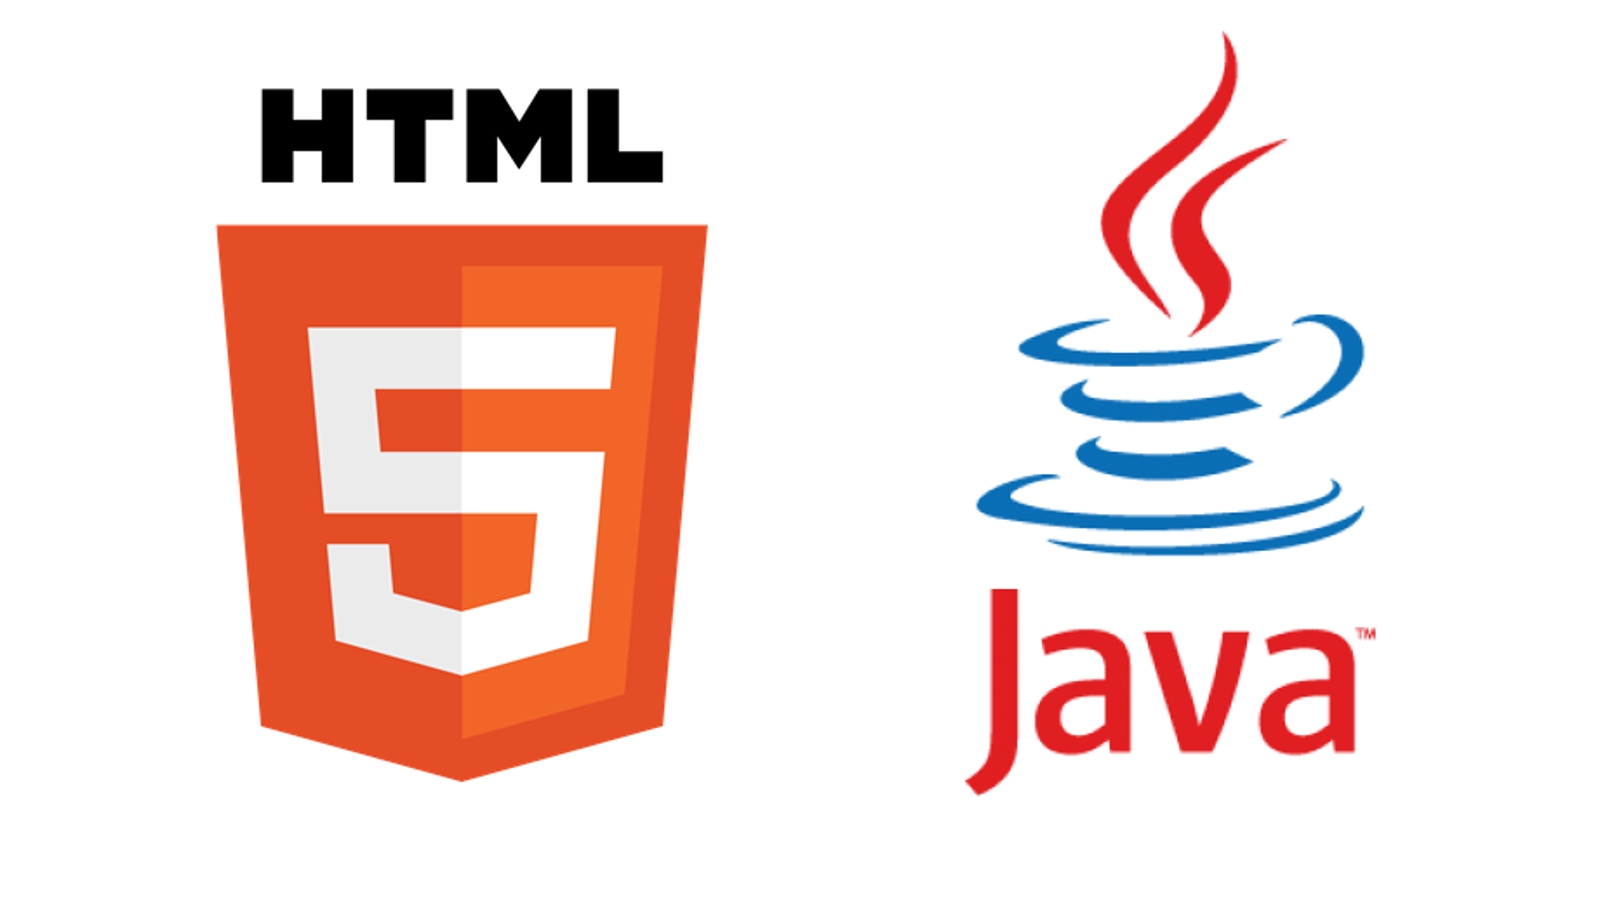 HTMLとJavaによるwebアプリのはじめの一歩をサポートします｡-image2